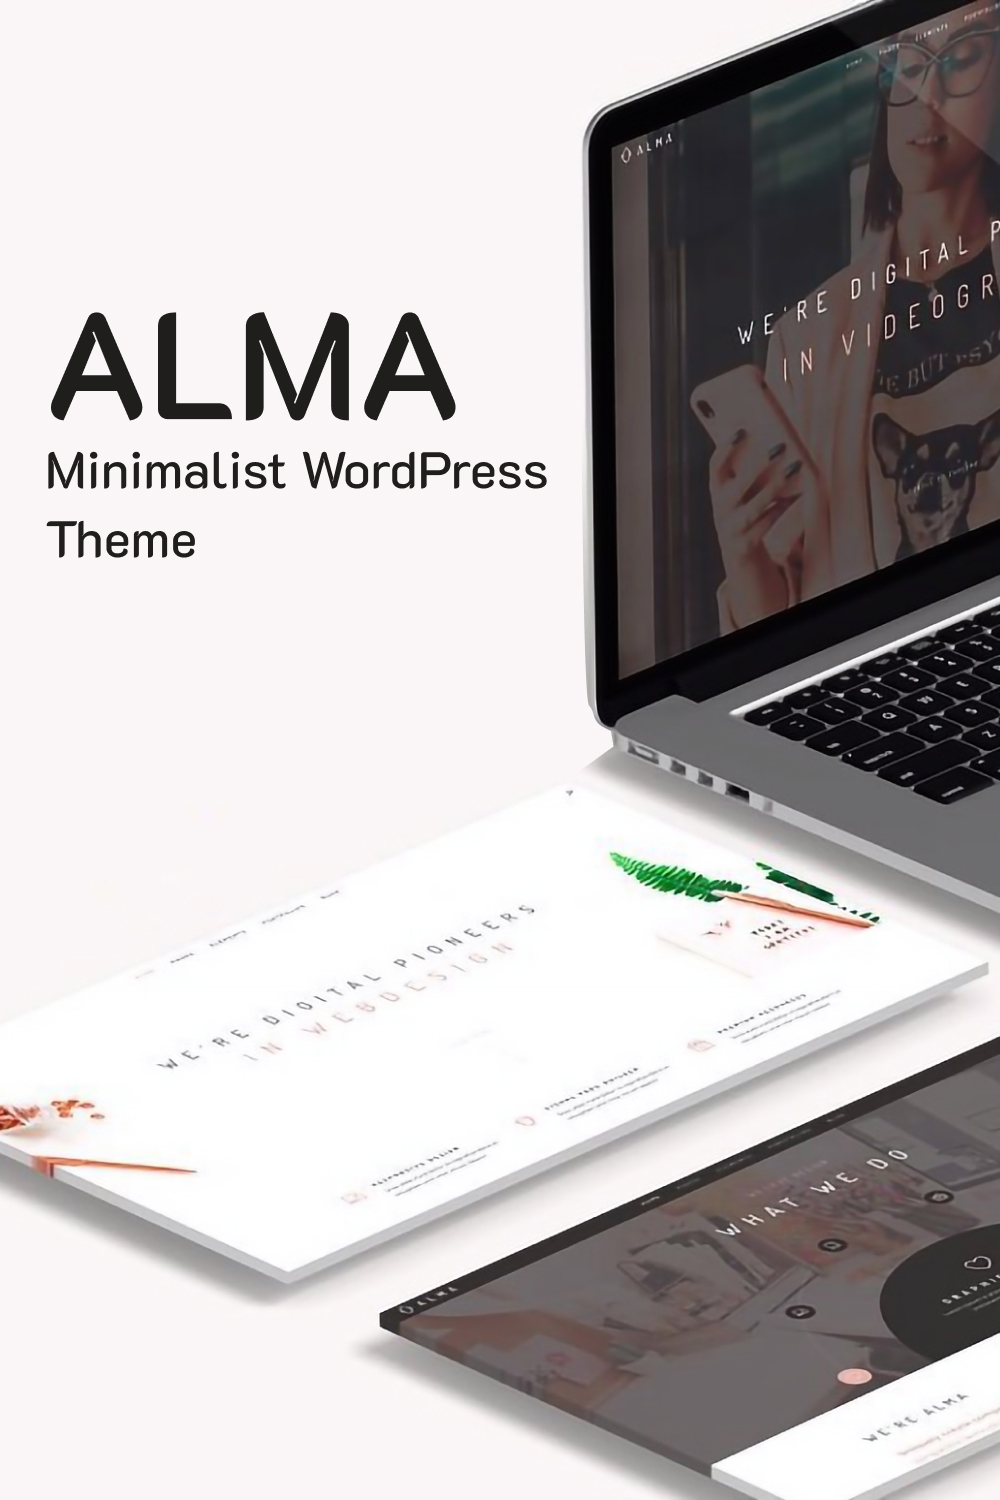 alma minimalist wordpress theme 02 689